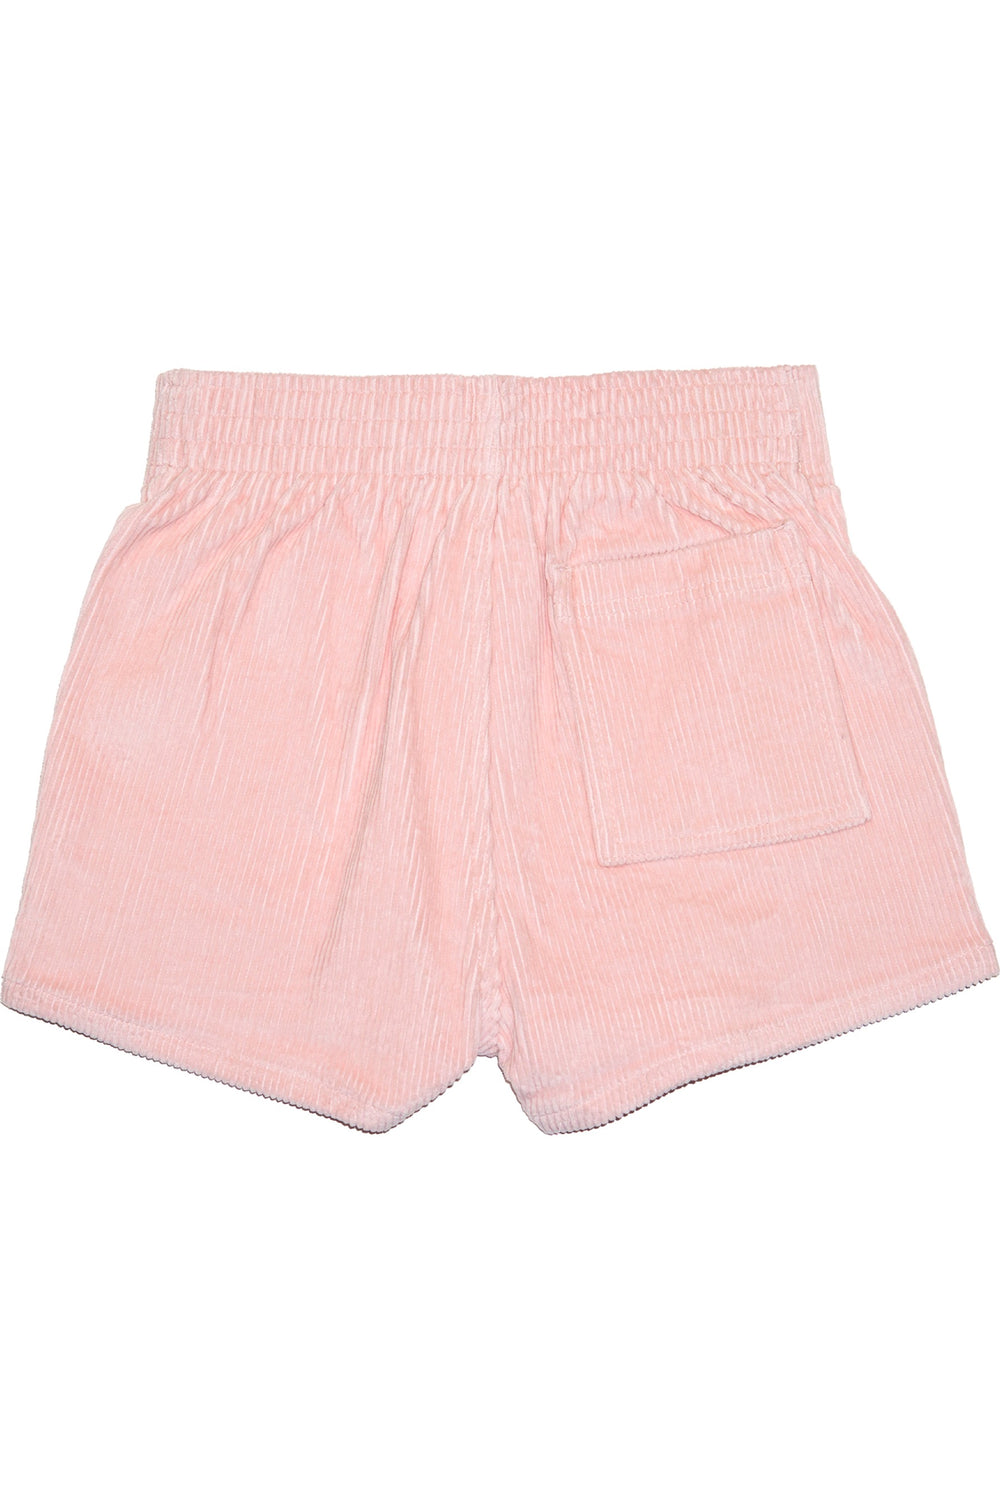 Powder Pink Hammies Shorts